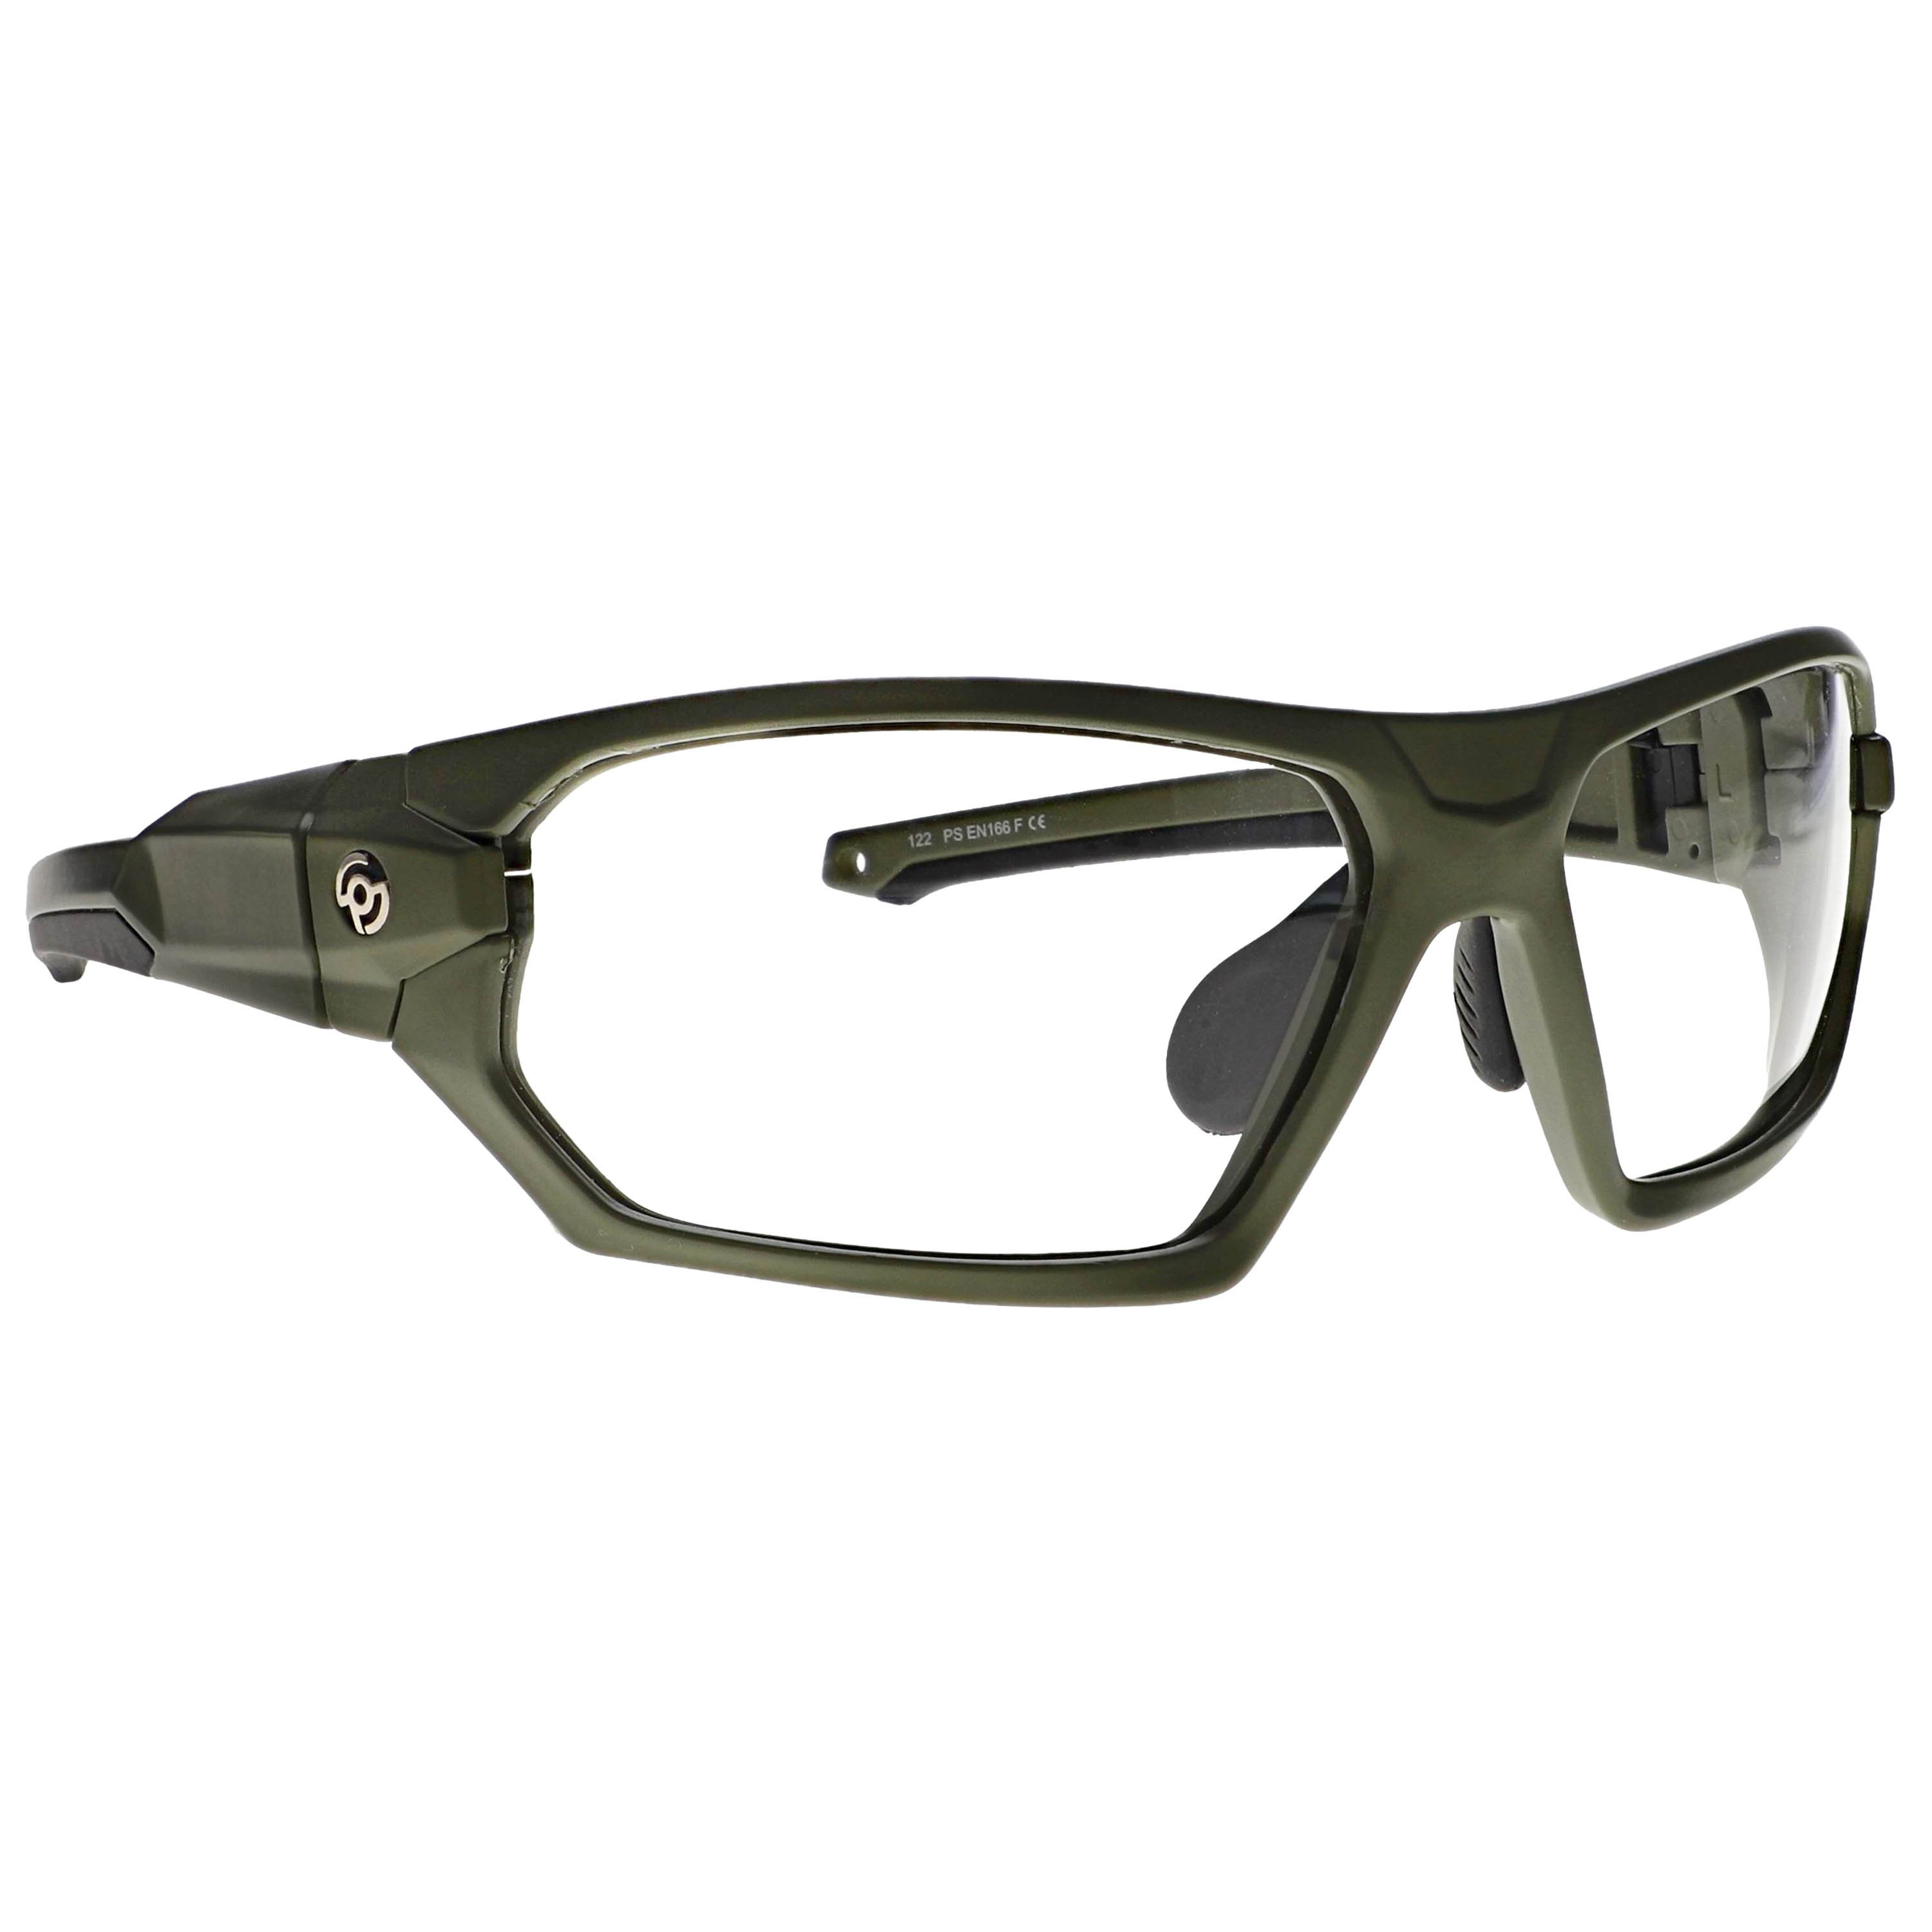 Prescription Safety Glasses RX-15011 (Frame Color: Black/Green)